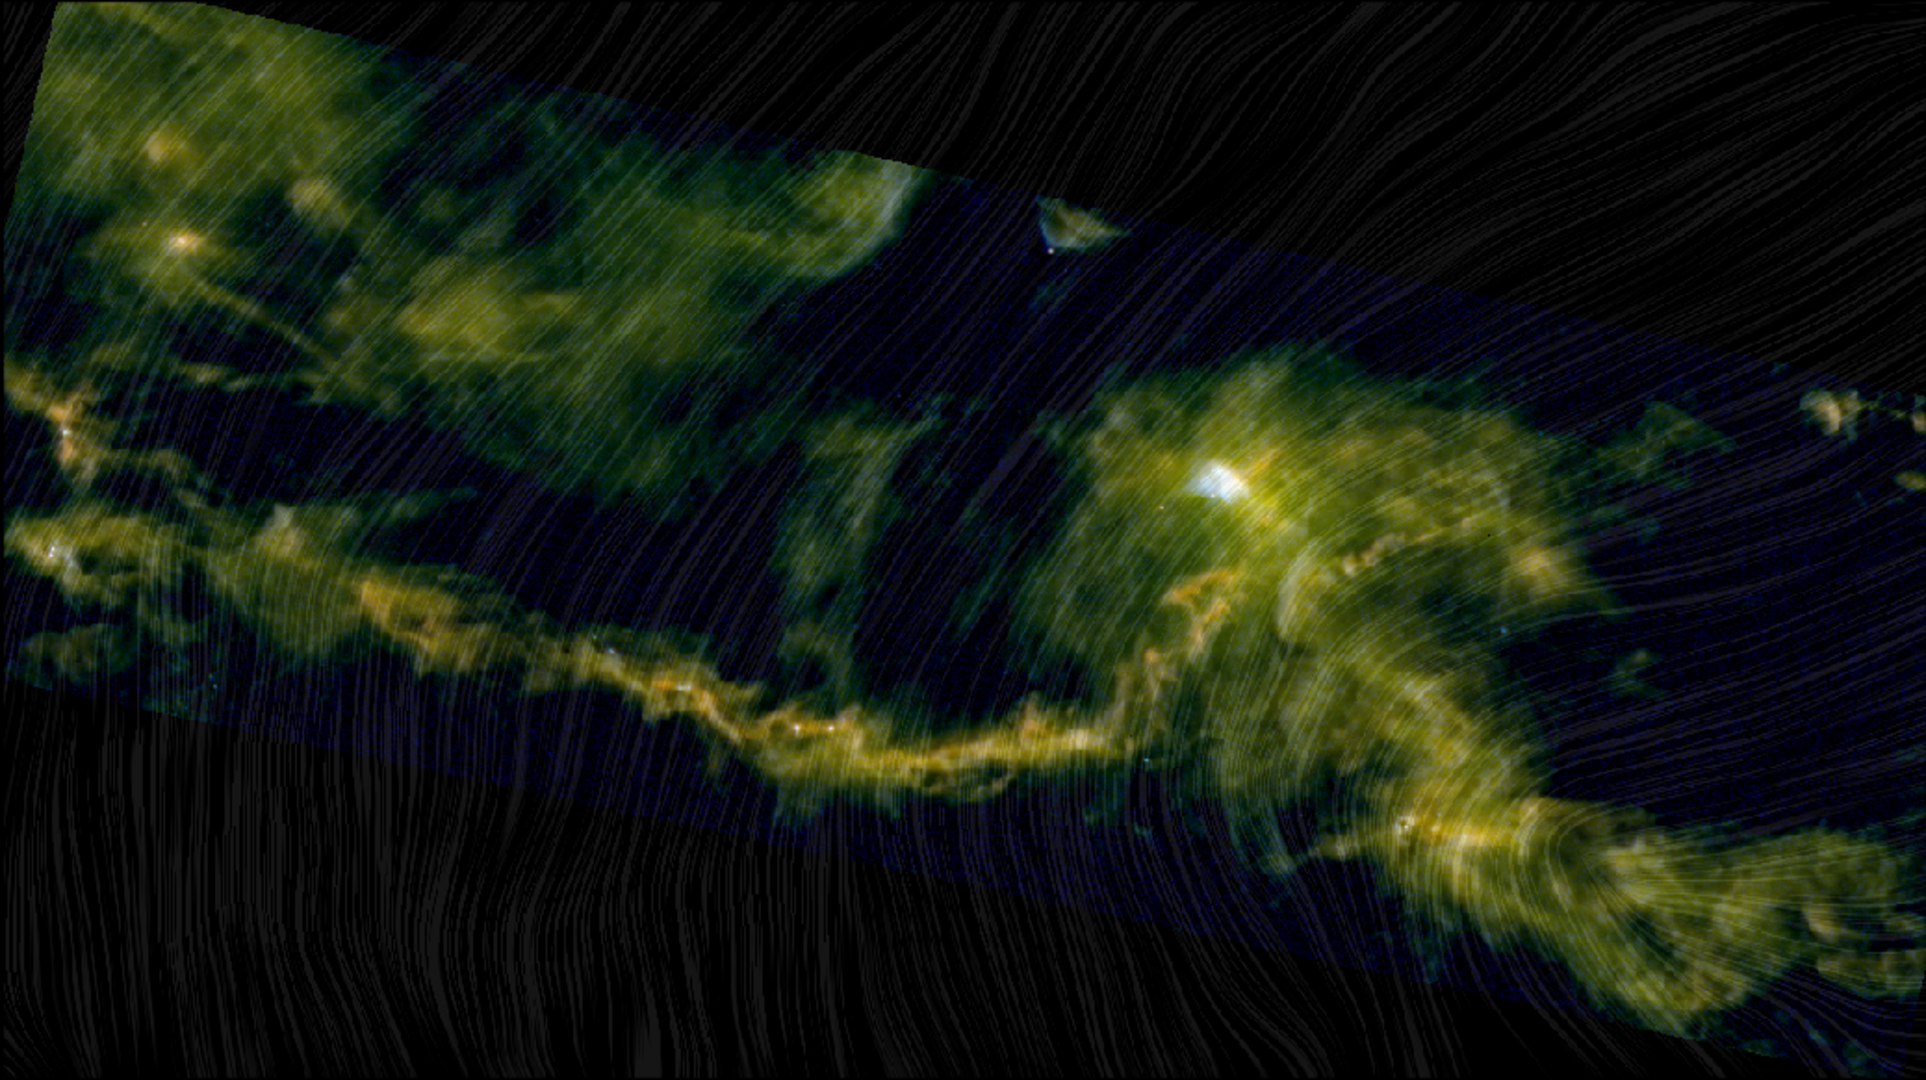 Taurus Molecular Cloud viewed by Herschel and Planck